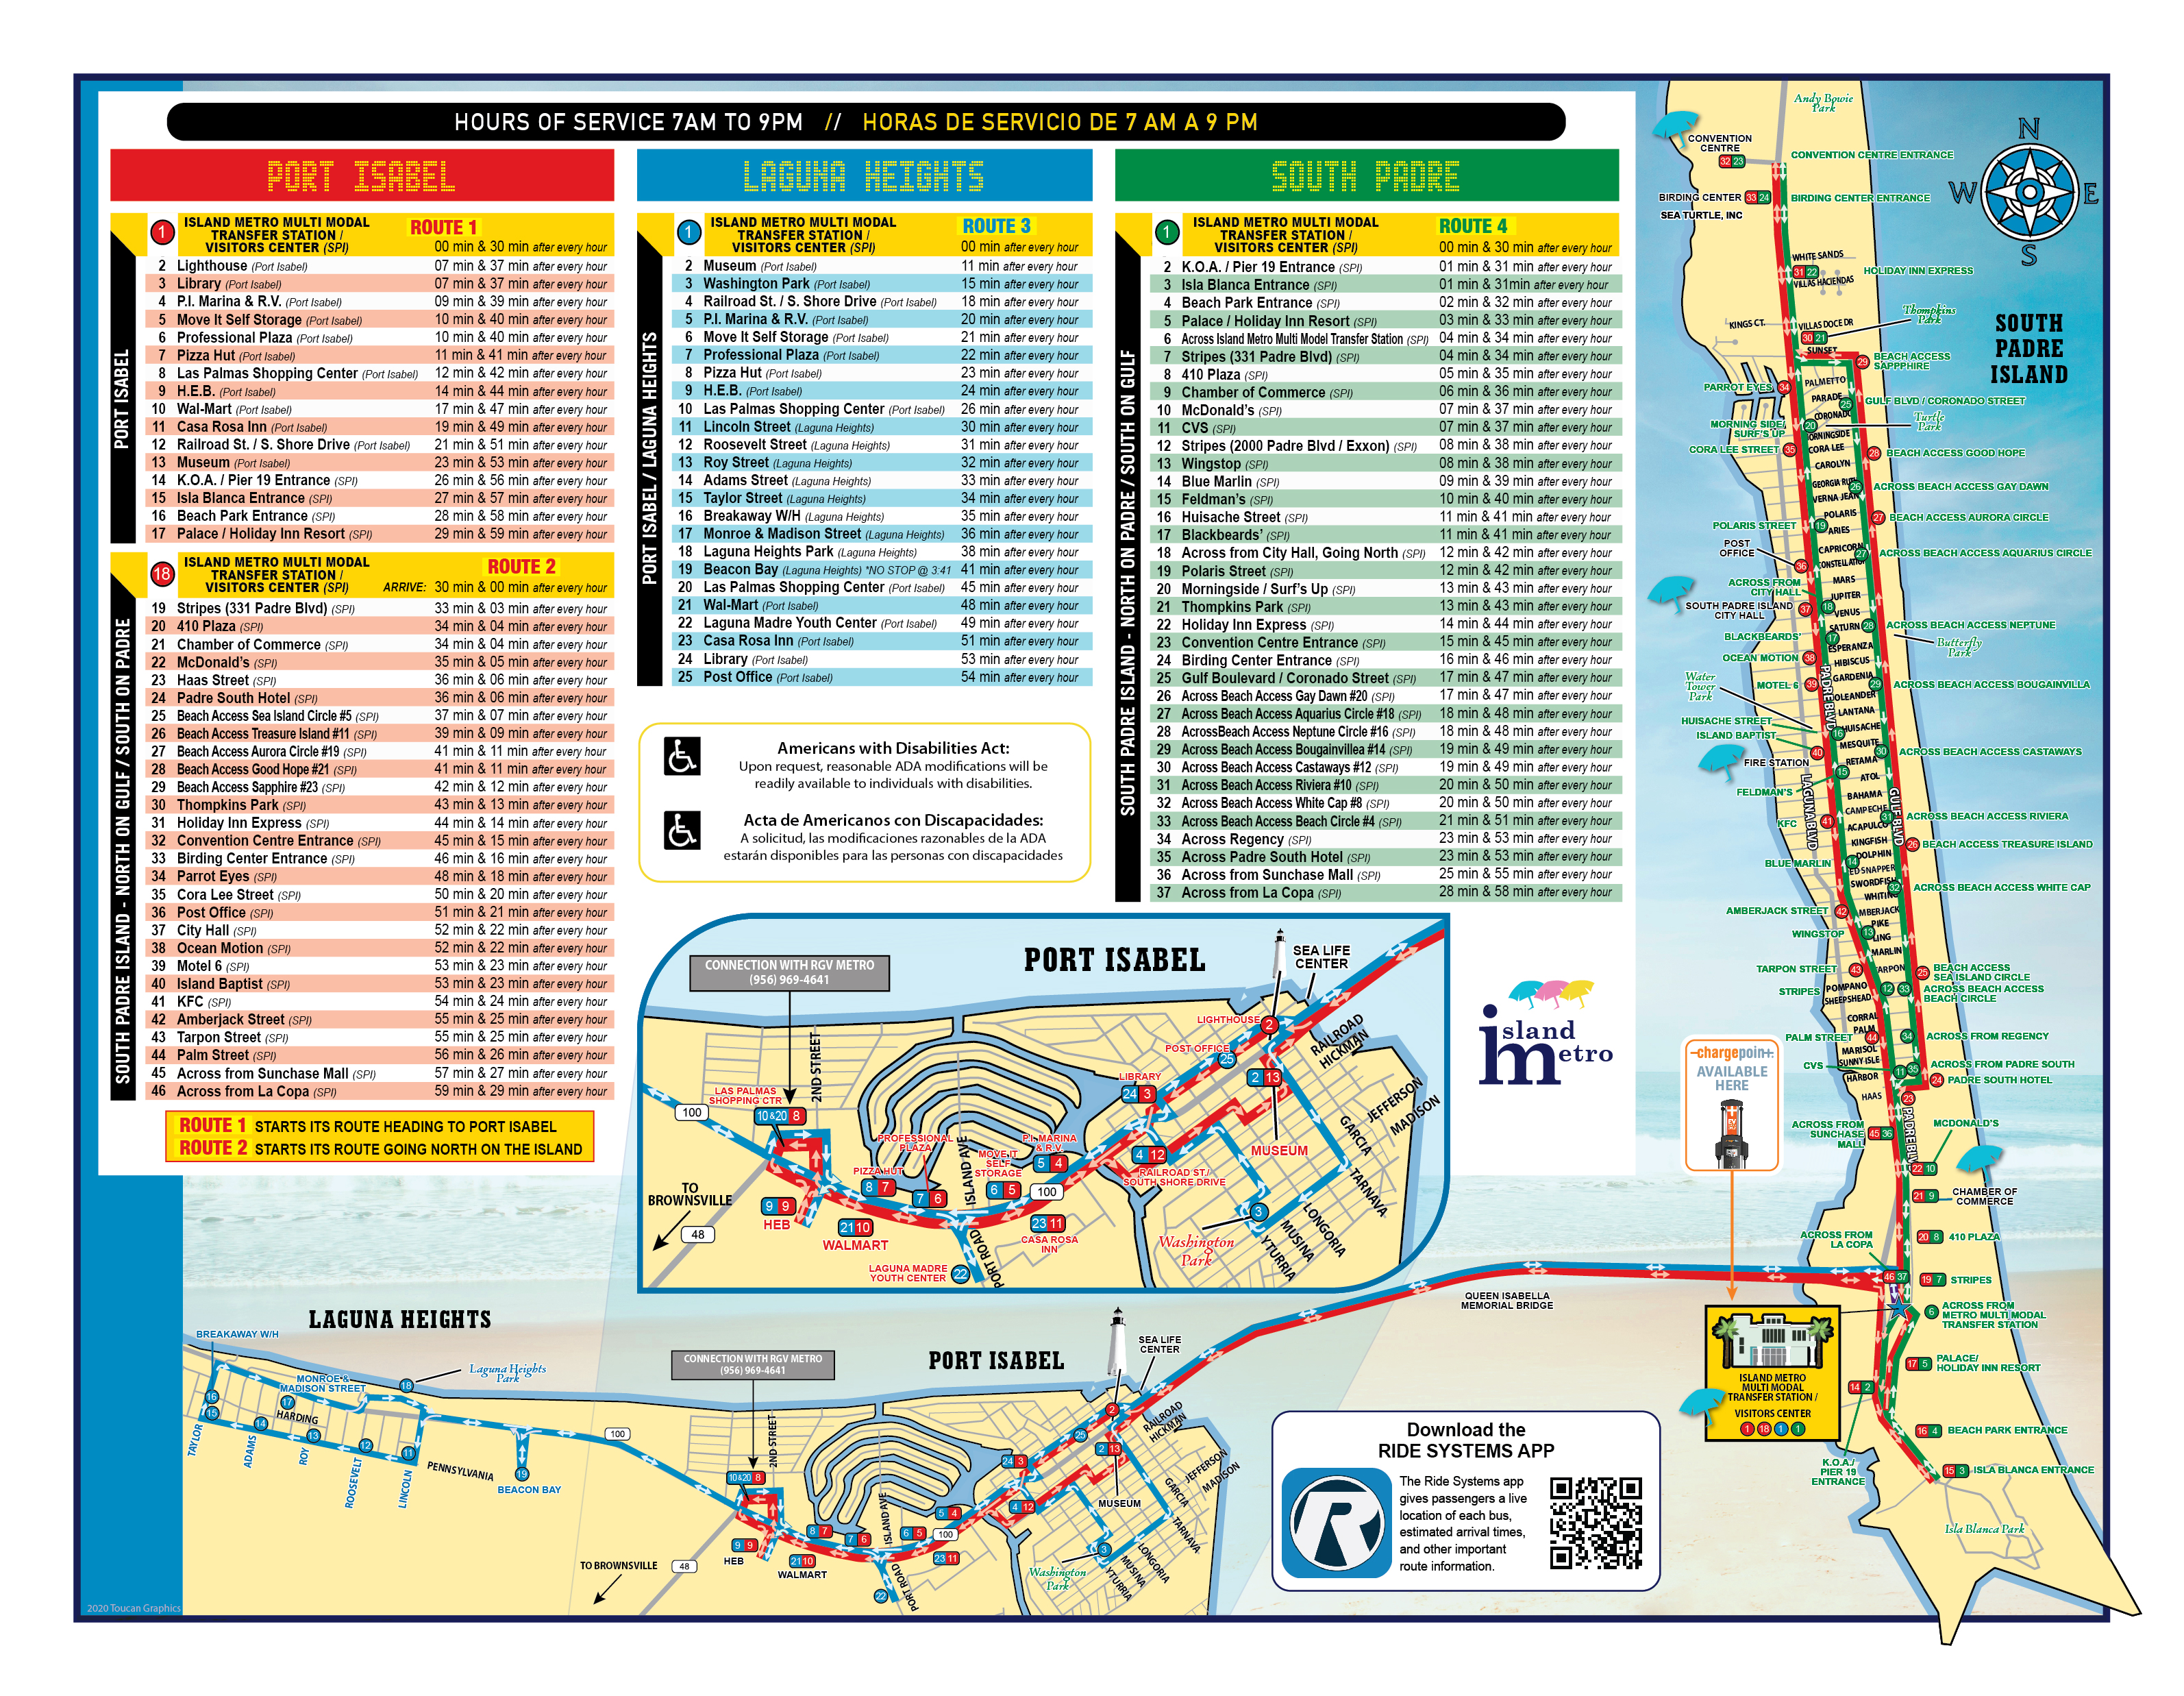 Bus Route Descriptions / South Padre Island, Texas